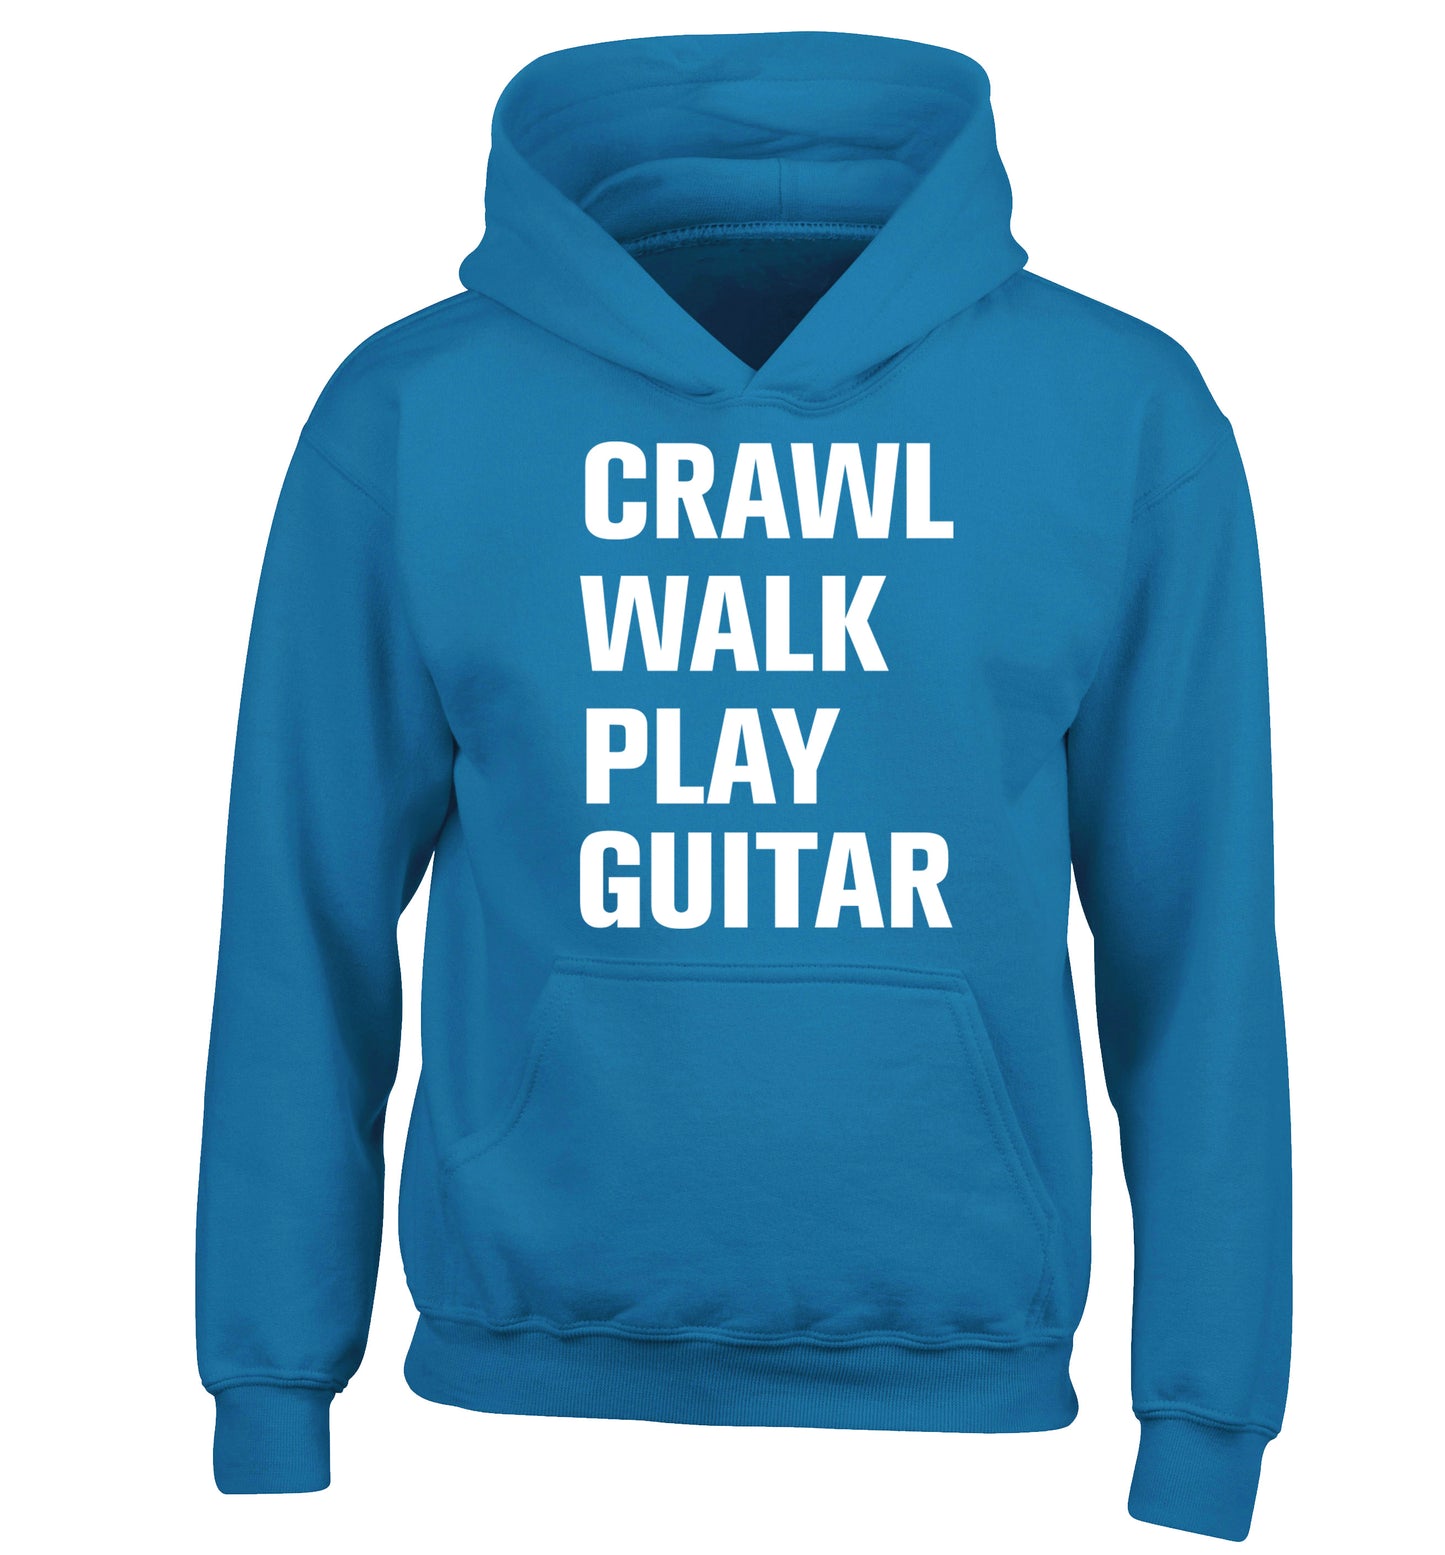 Crawl walk play guitar children's blue hoodie 12-13 Years